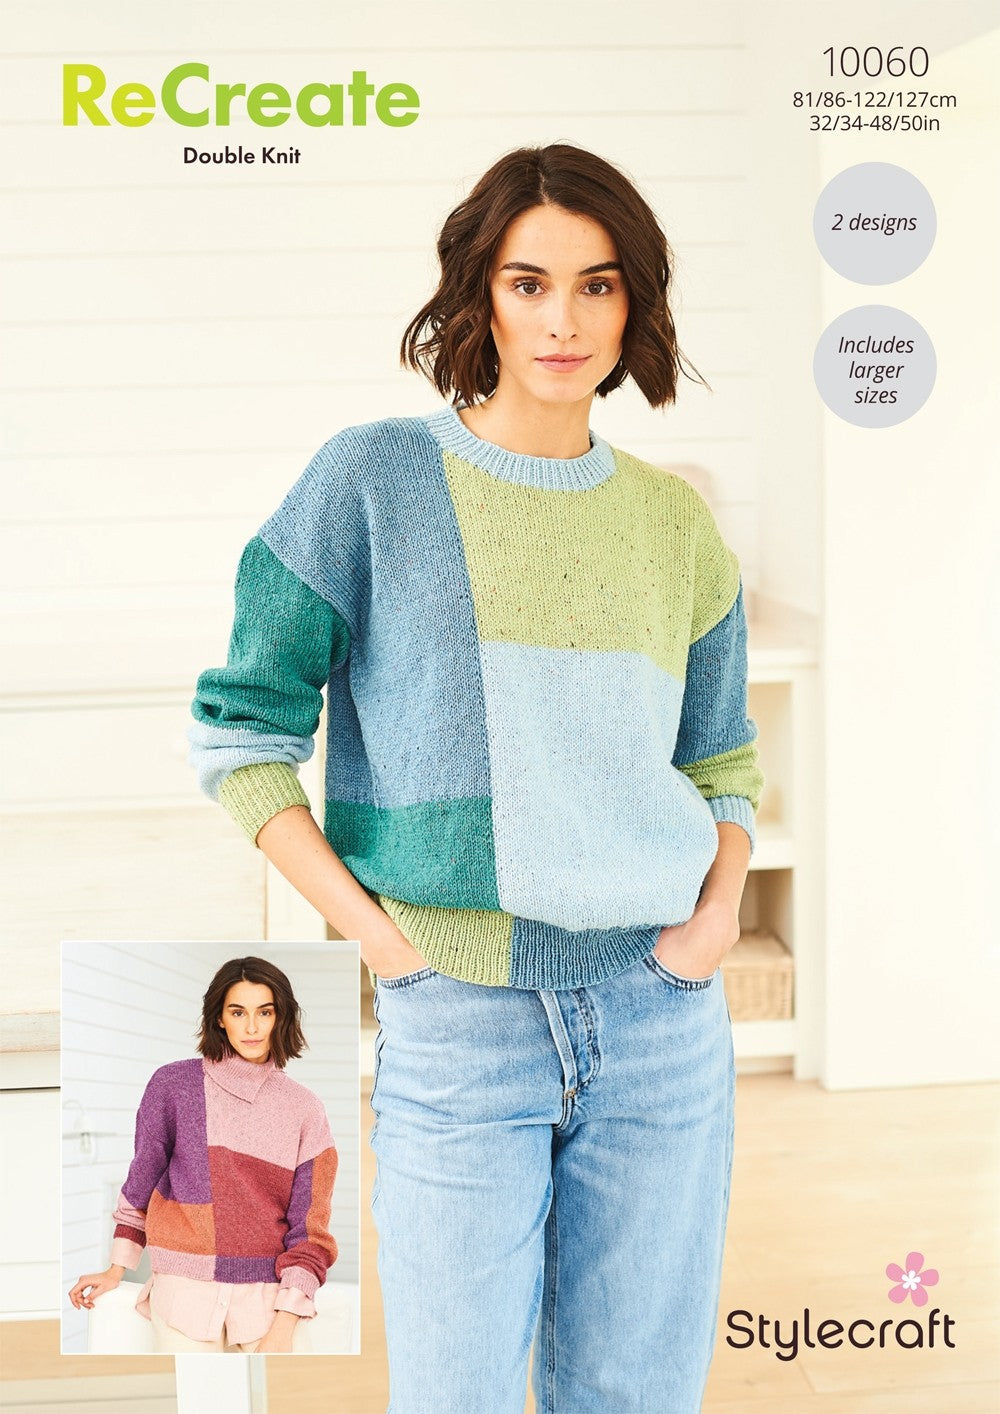 Stylecraft ReCreate DK - Sweaters (10060)